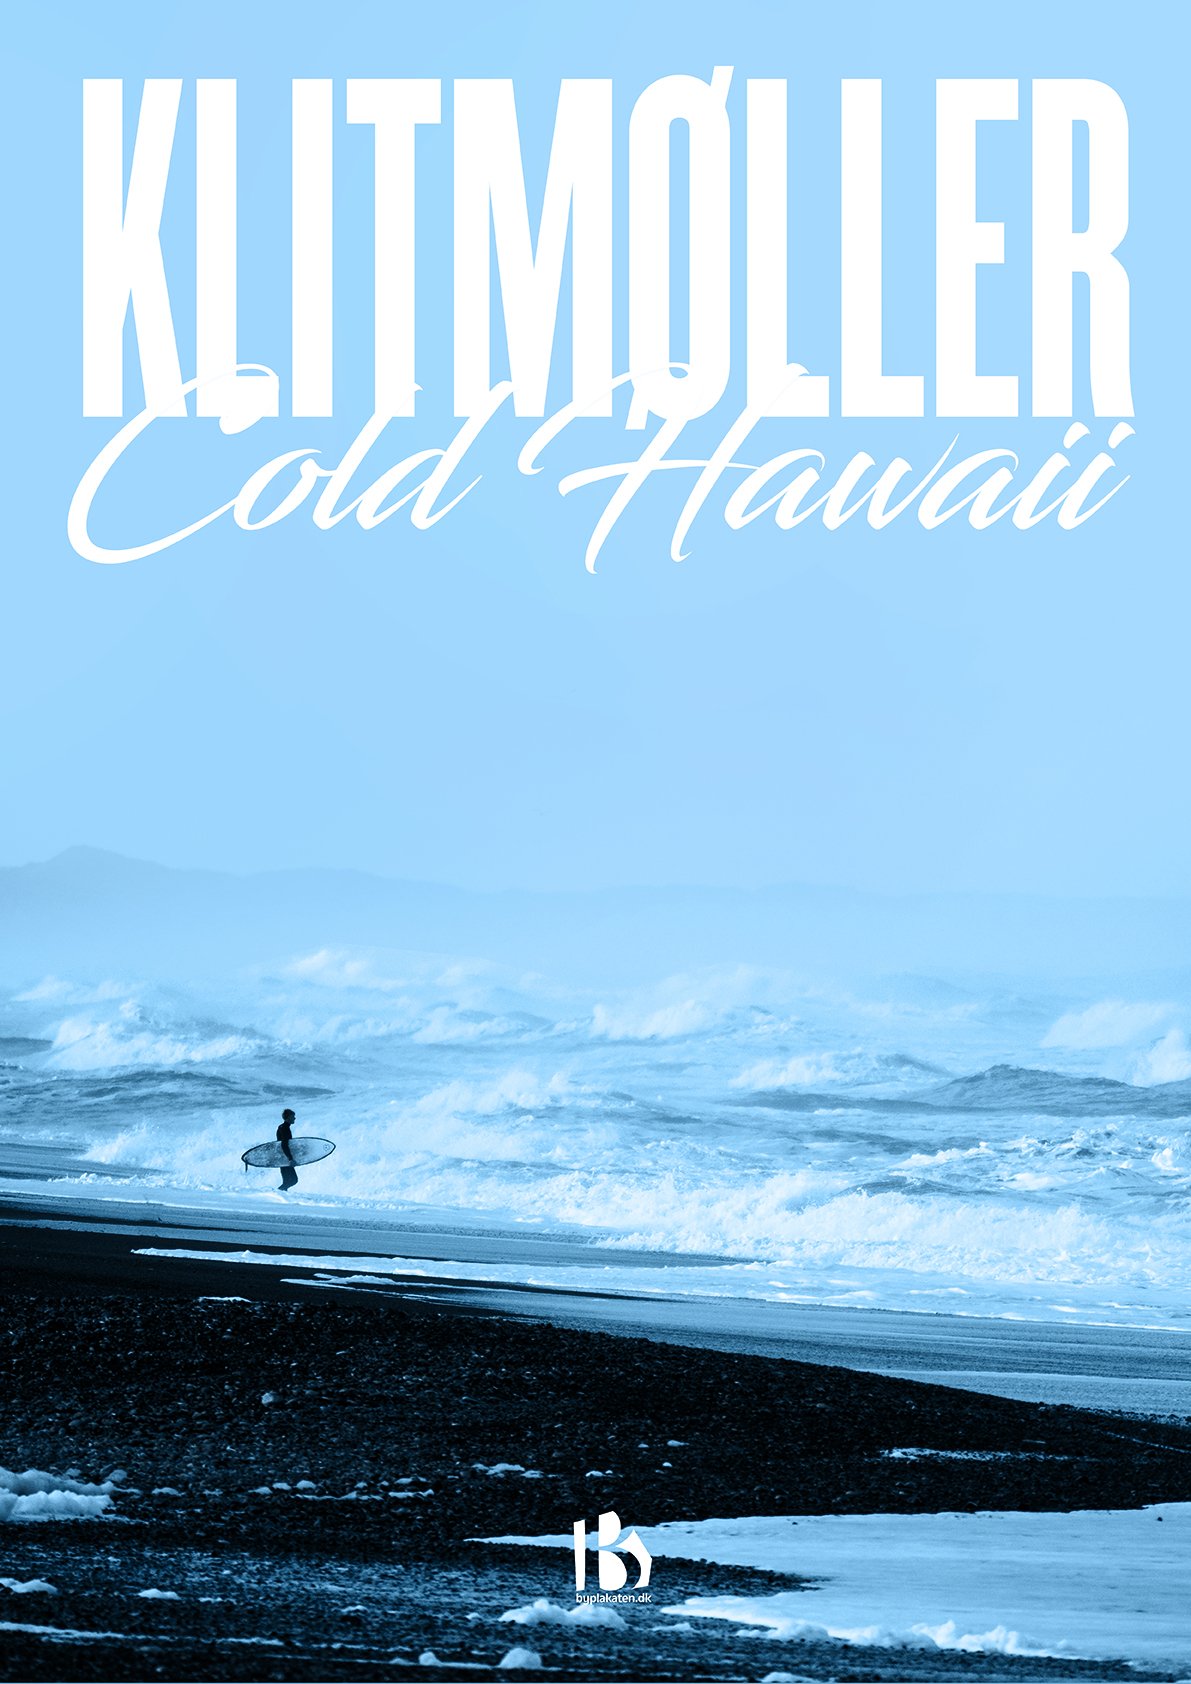 stemning sydvest inden for Klitmøller (7700) - Kunstnerisk - Cold Hawaii - Klitmøller plakater -  Byplakaten.dk v/Daugaard Trading